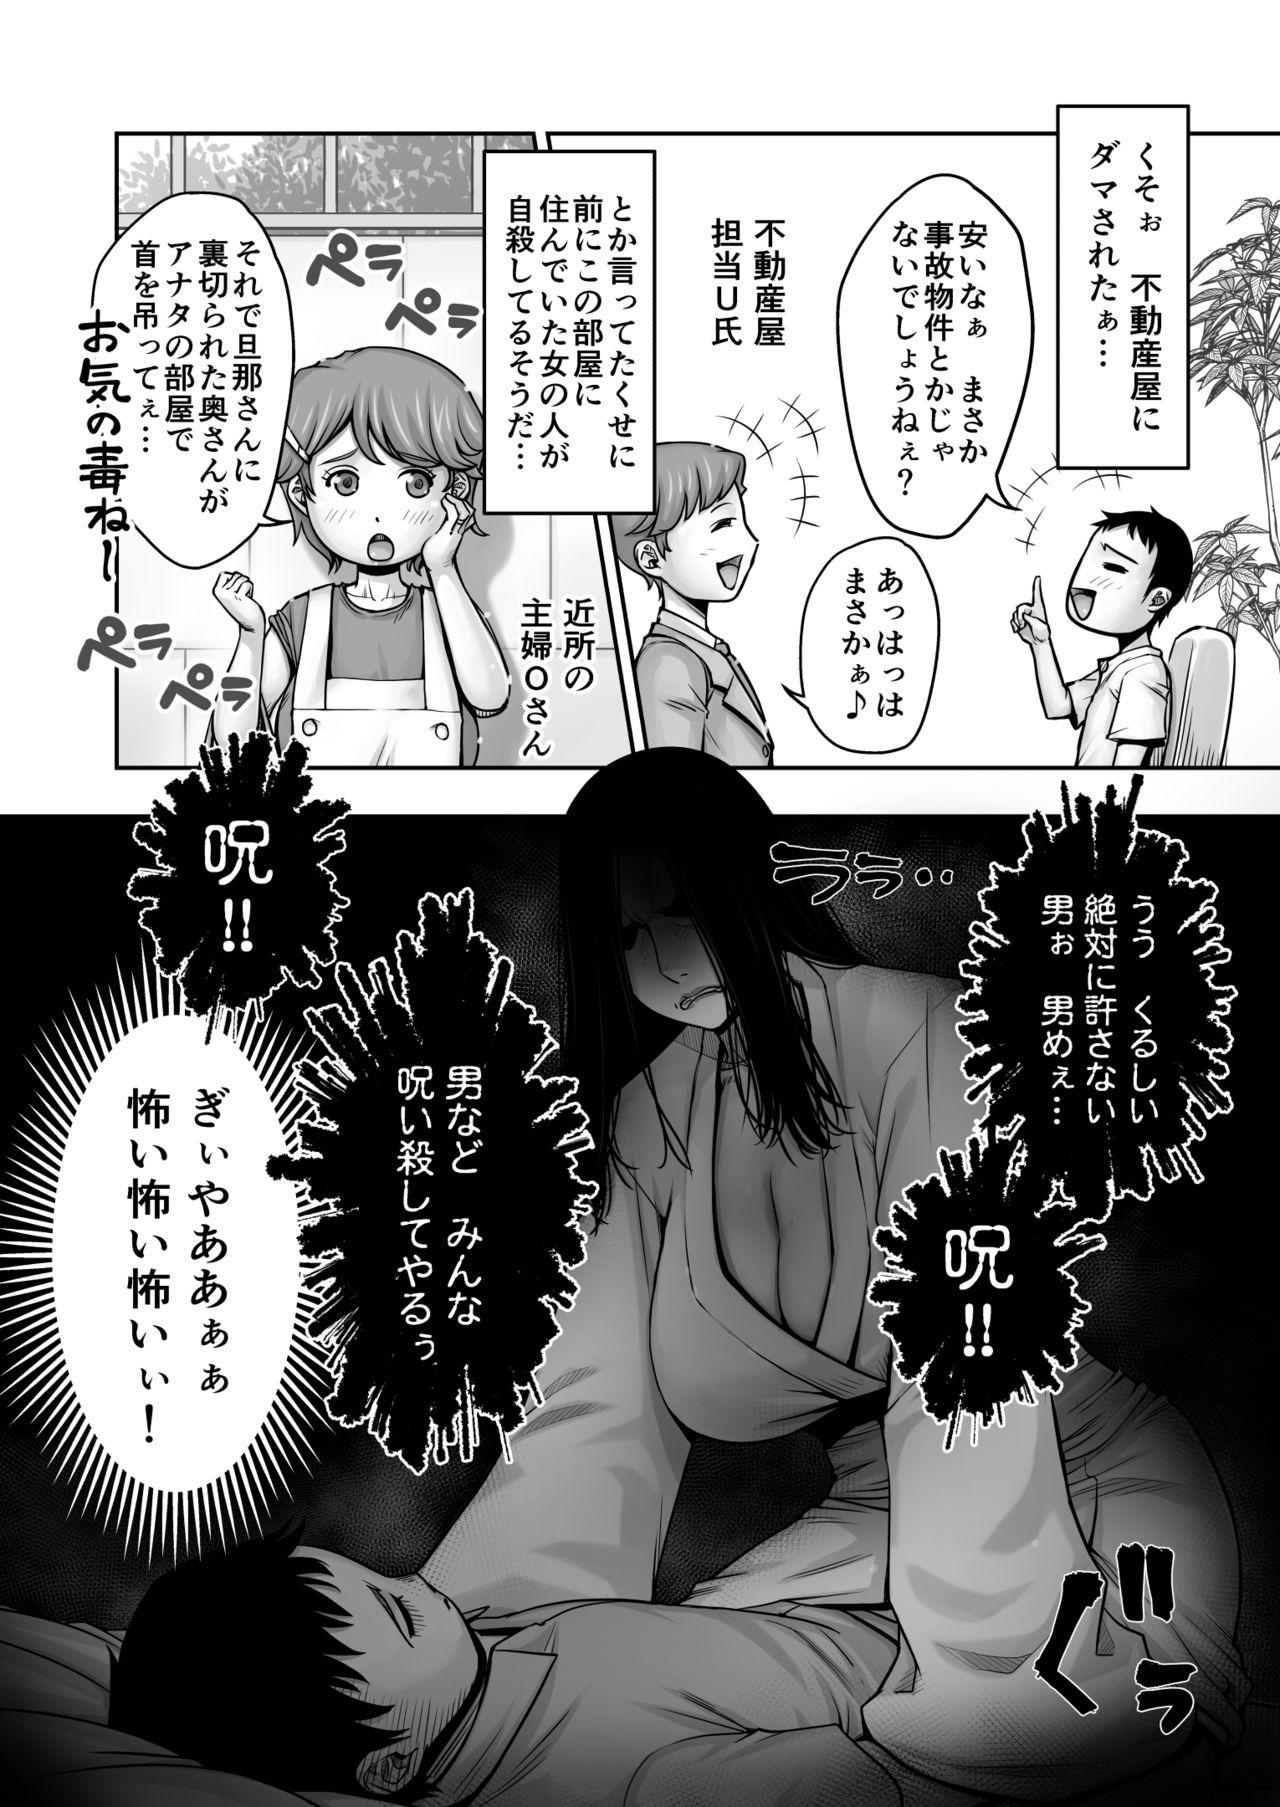 Spooning Dōtei ga heya ni tori tsuite iru on'na yūrei ni gyaku kanashibari o kaketa kekka - Original Gay Friend - Page 3